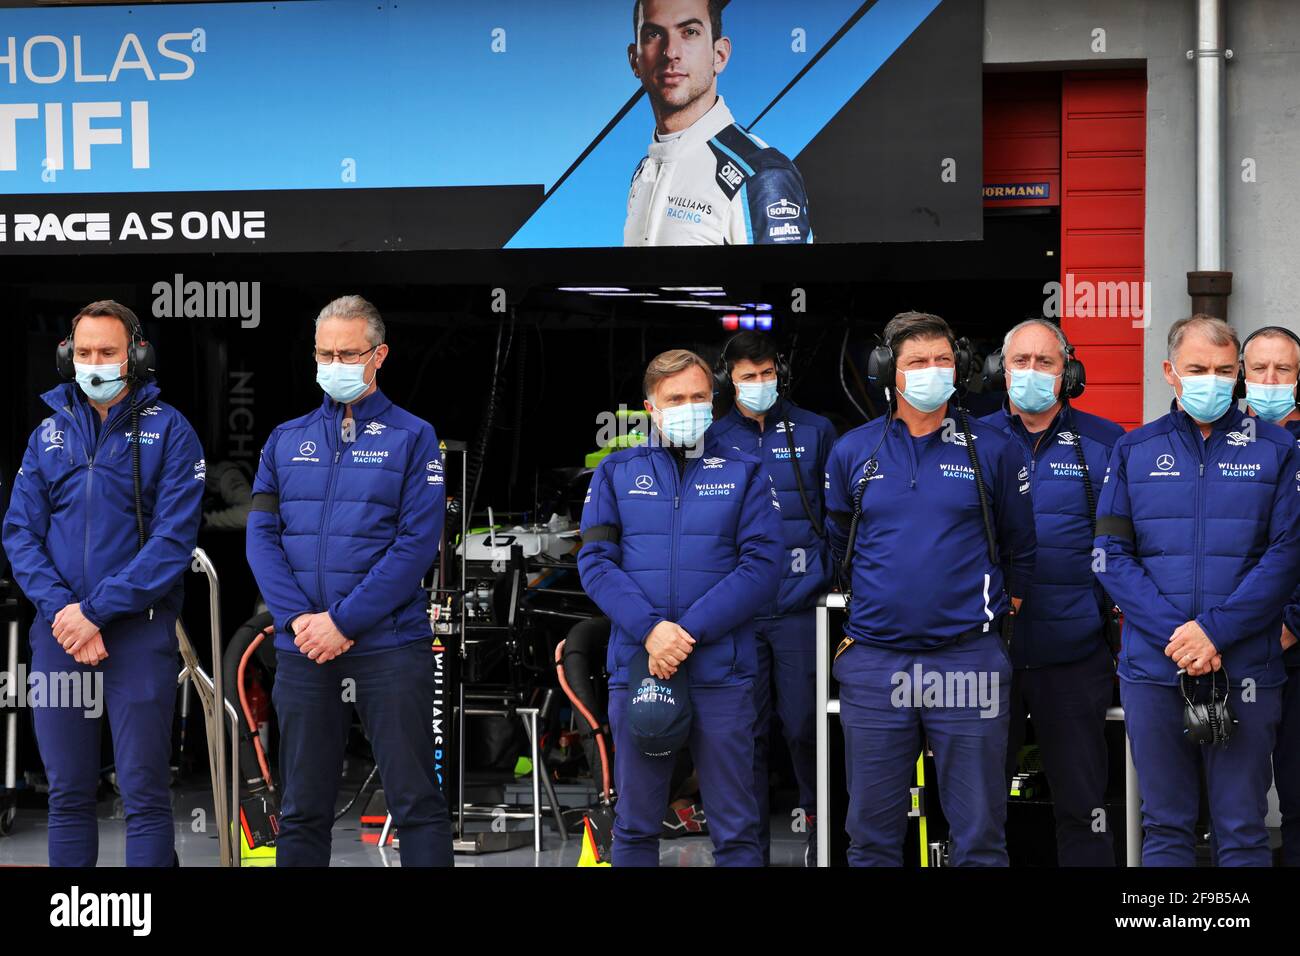 Williams Racing Observar un minuto de silencio para S.A.R. el Príncipe Felipe, Duque de Edimburgo. Gran Premio de Emilia Romagna, sábado 17th de abril de 2021. Imola, Italia. Foto de stock